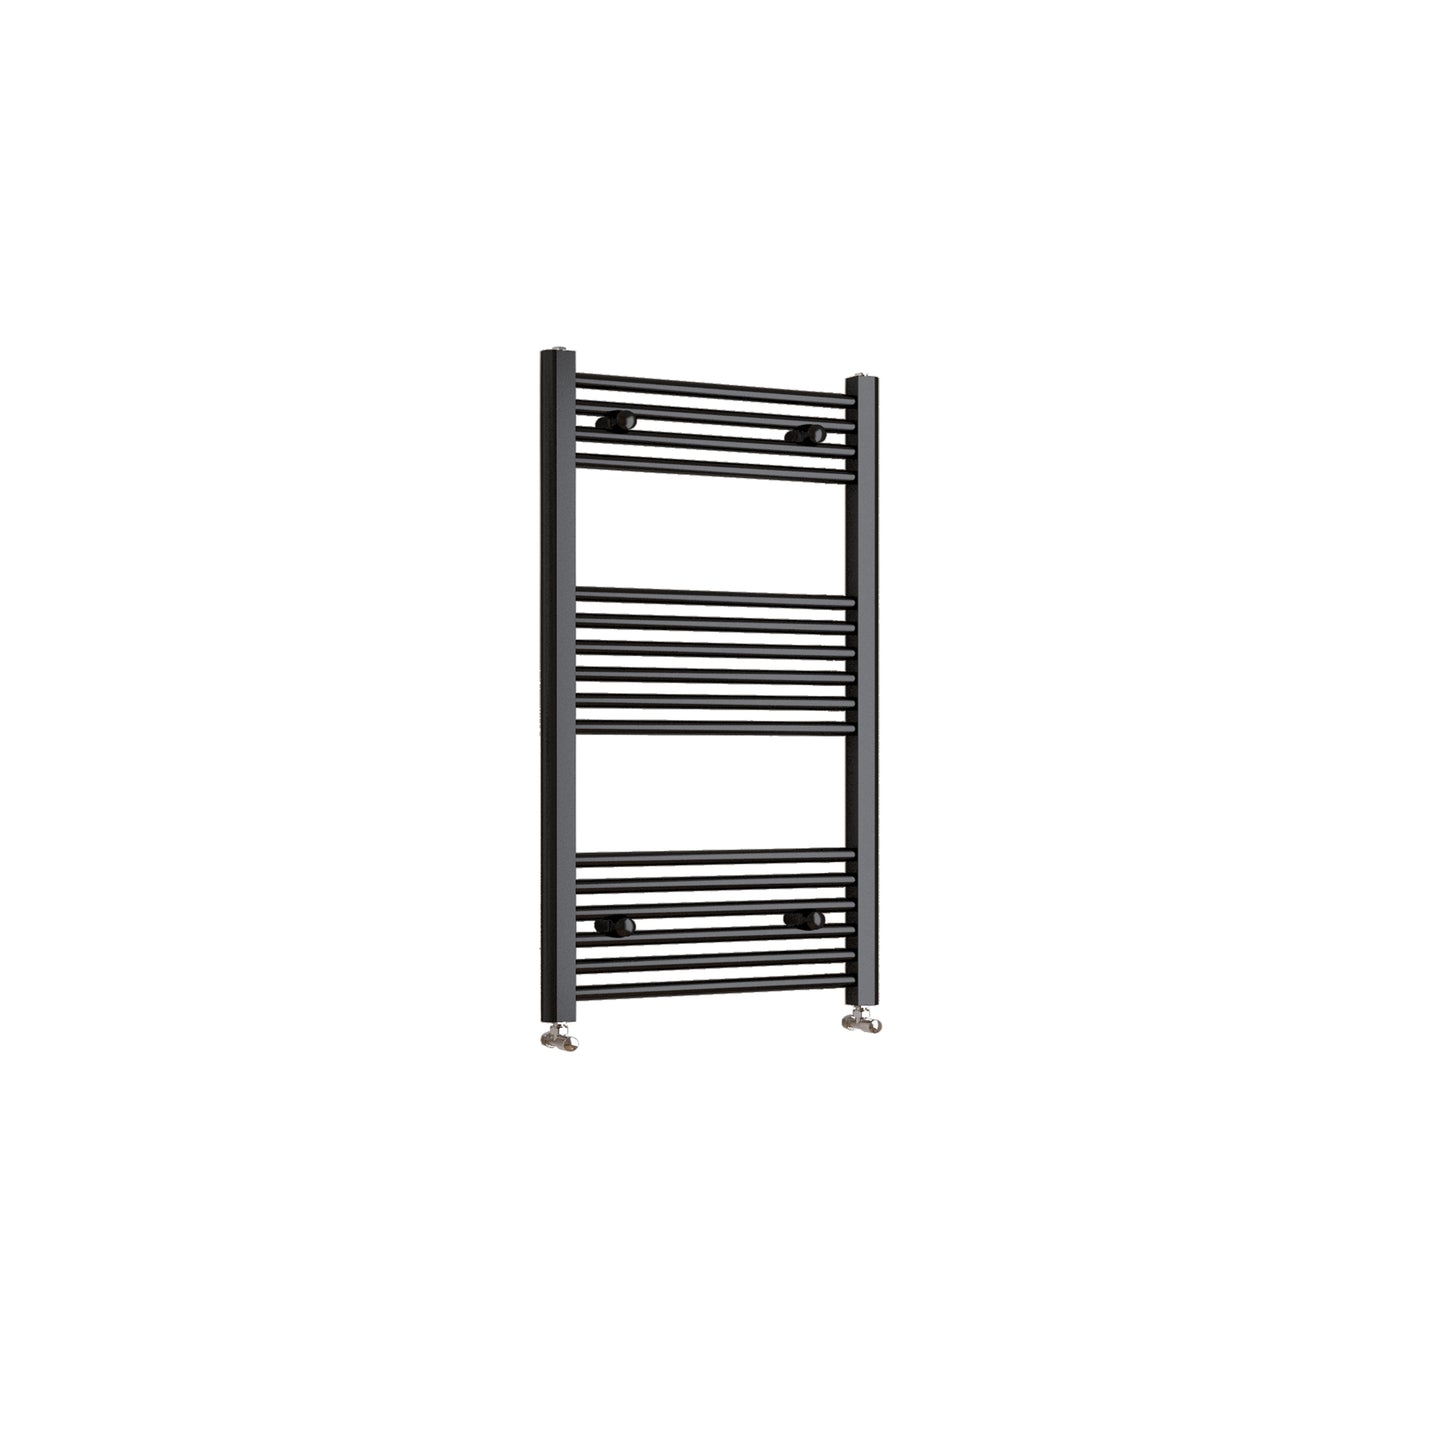 Black Heated Towel Rail Straight Bathroom Ladder Radiator